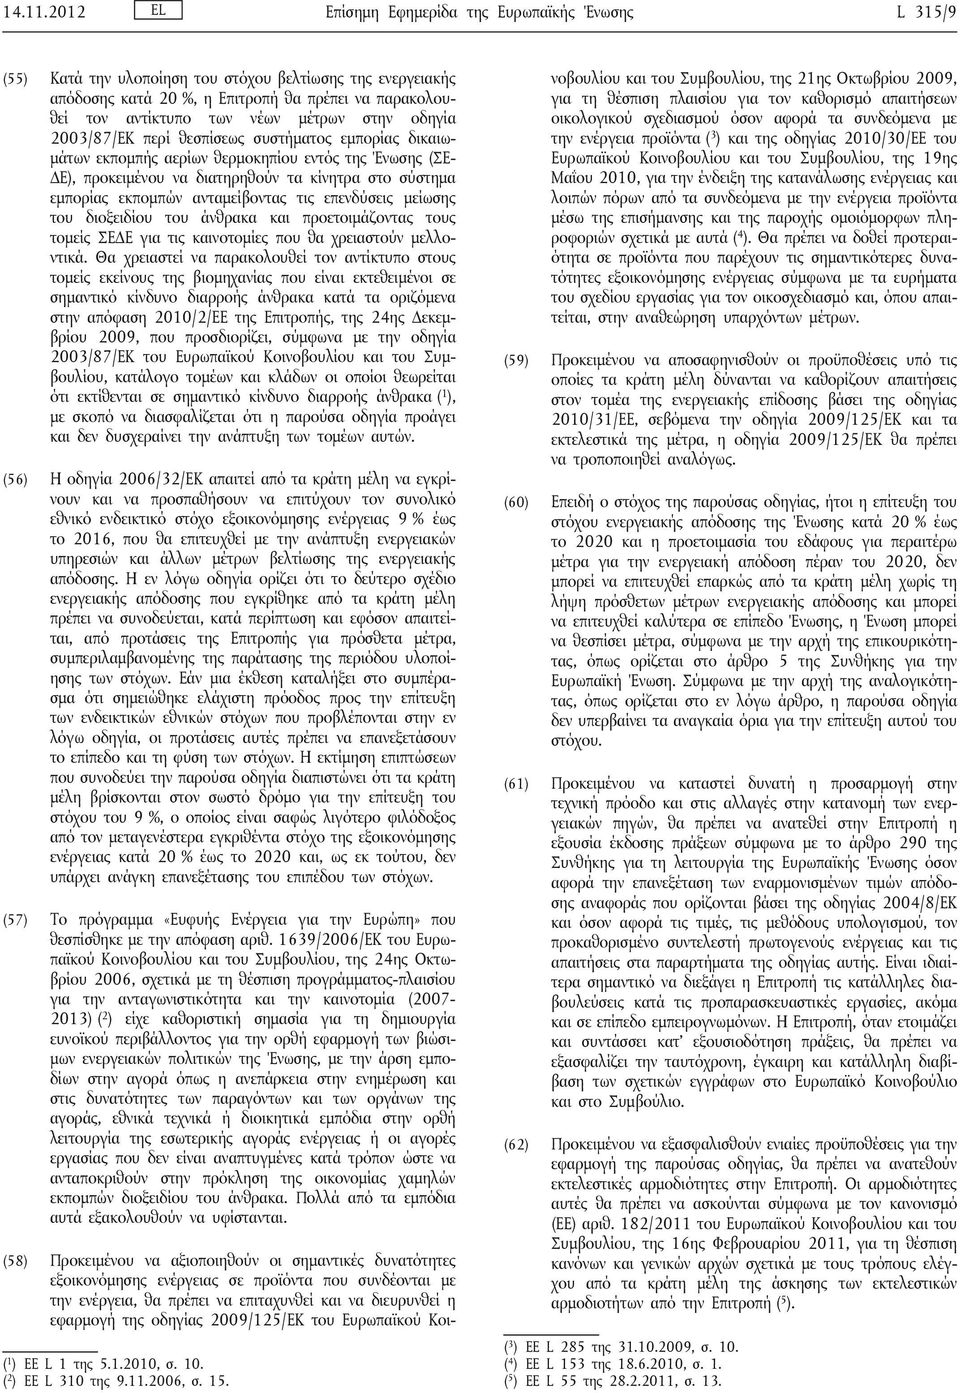 μέτρων στην οδηγία 2003/87/ΕΚ περί θεσπίσεως συστήματος εμπορίας δικαιωμάτων εκπομπής αερίων θερμοκηπίου εντός της Ένωσης (ΣΕ ΔΕ), προκειμένου να διατηρηθούν τα κίνητρα στο σύστημα εμπορίας εκπομπών